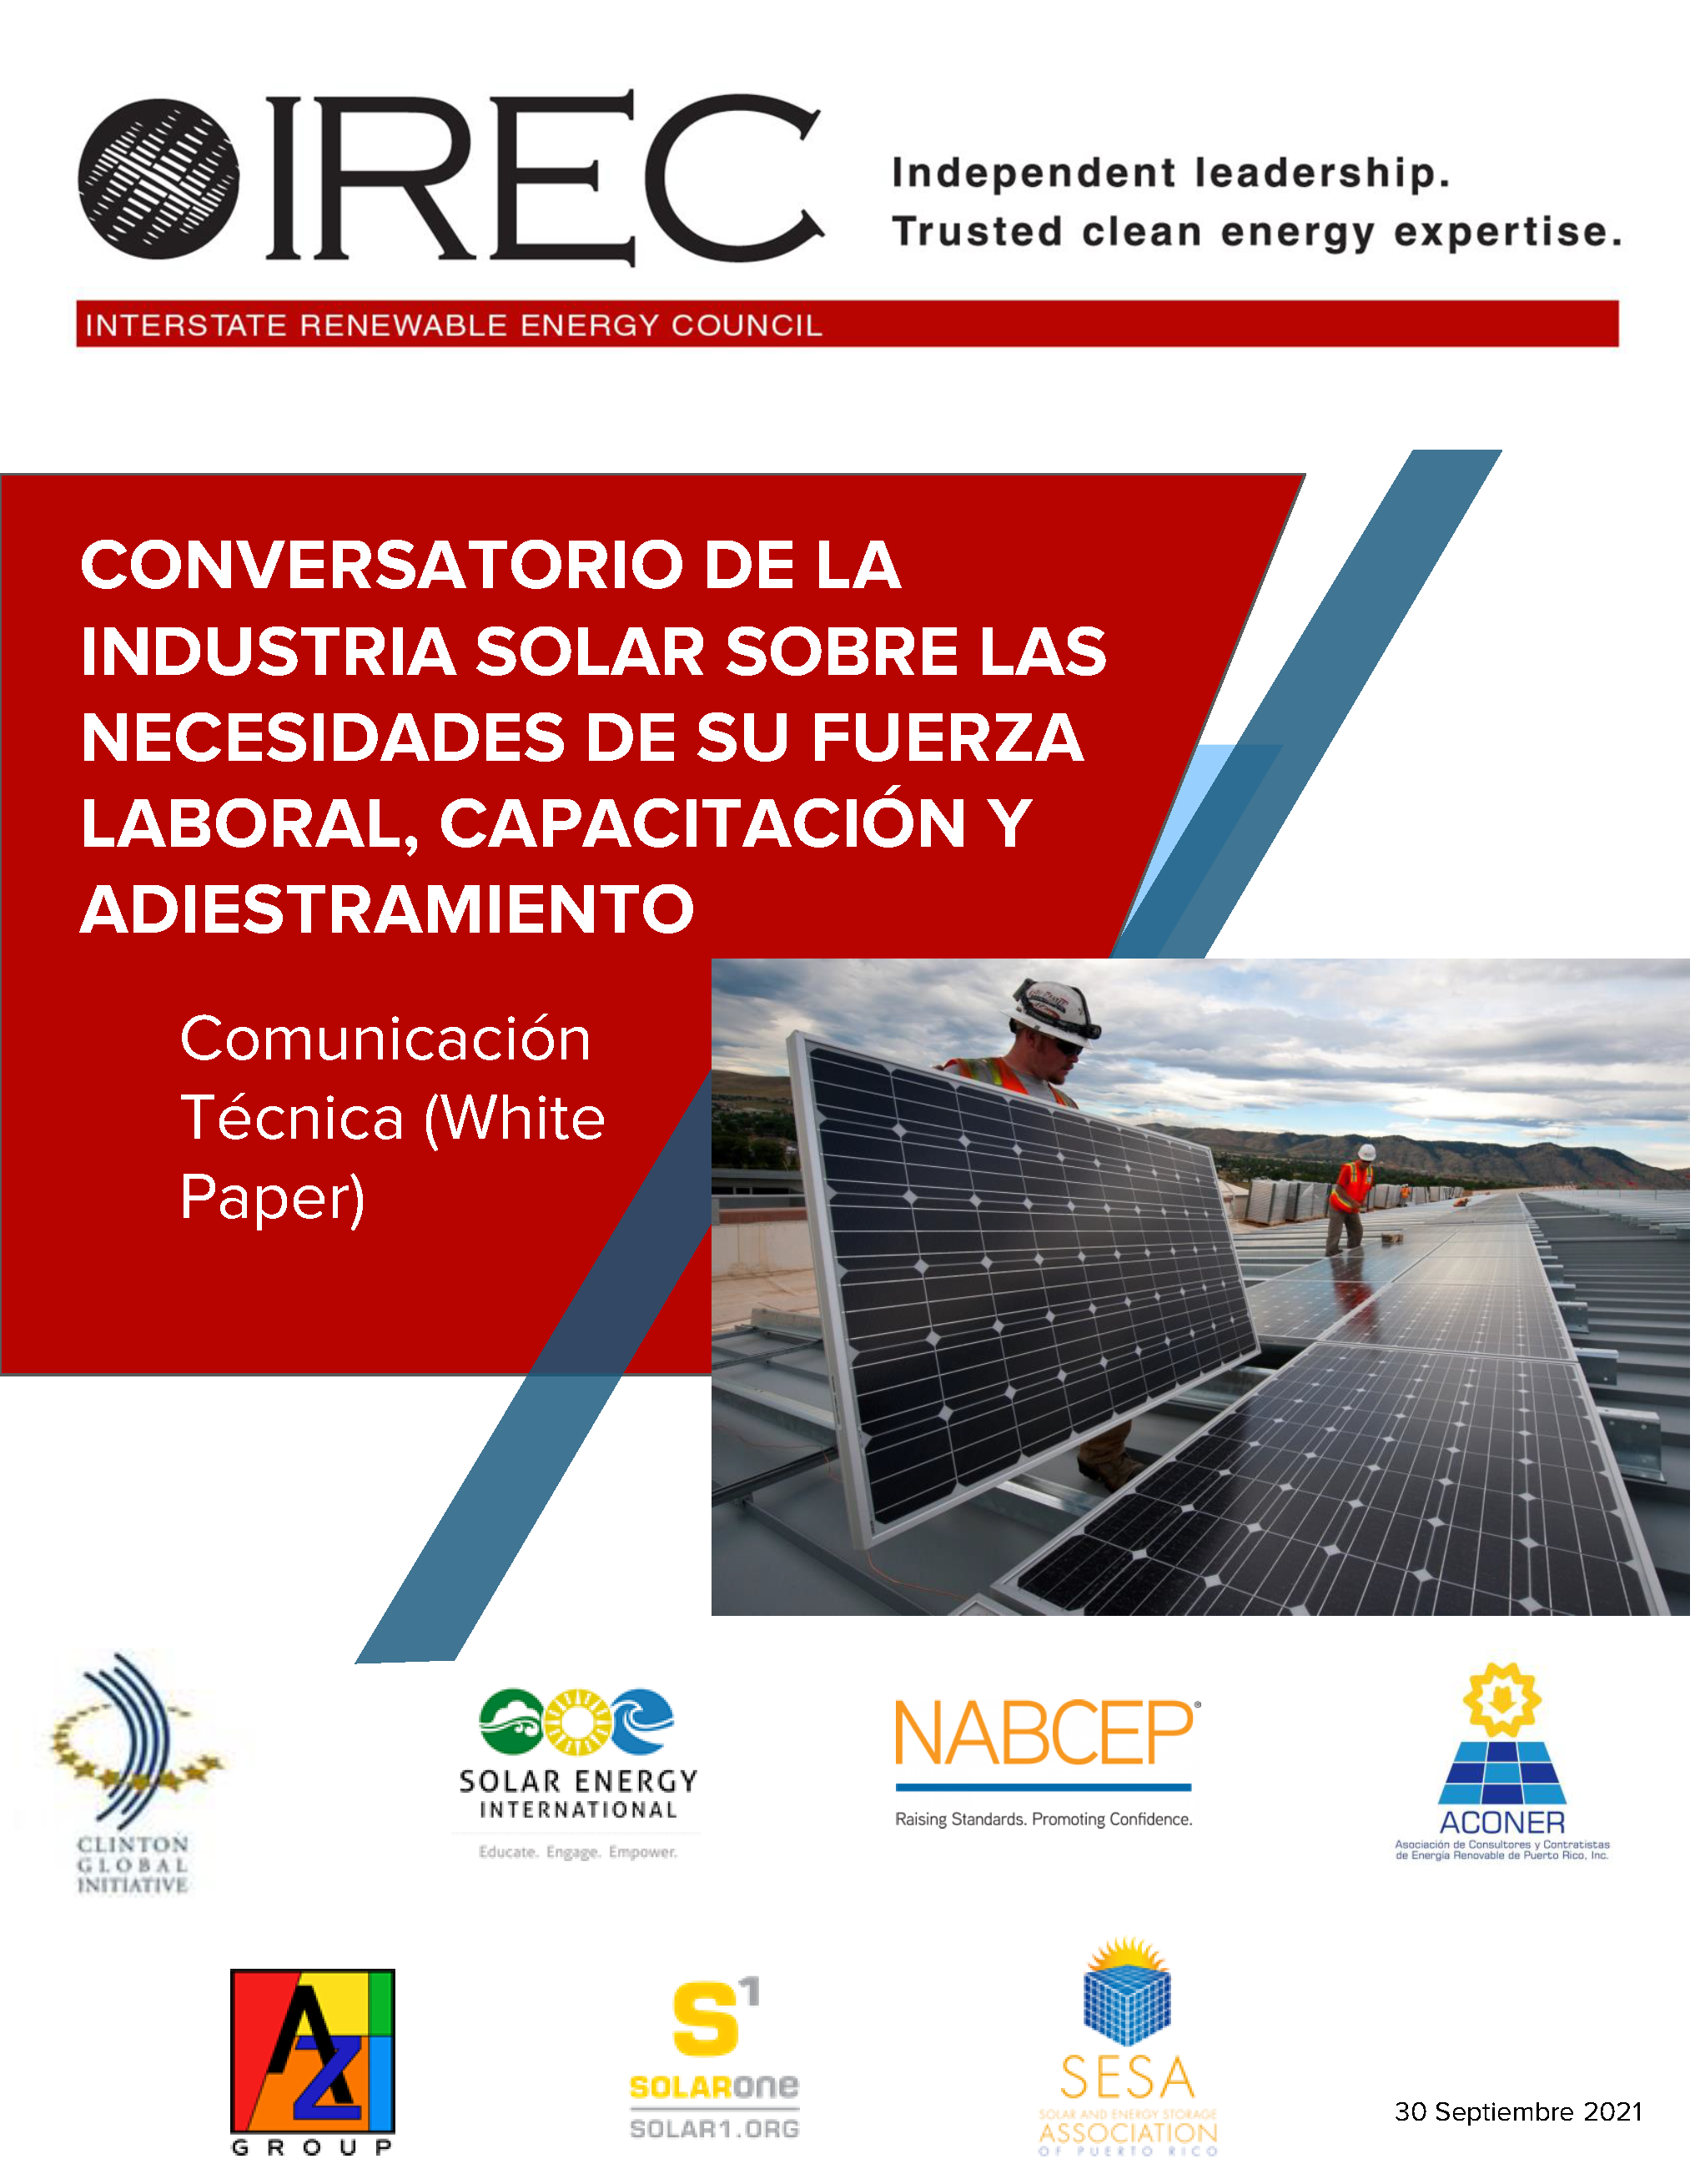 Conversatorio de la industria solar sobre las necesidades de su fuerza laboral, capacitación y adiestramiento en Puerto Rico